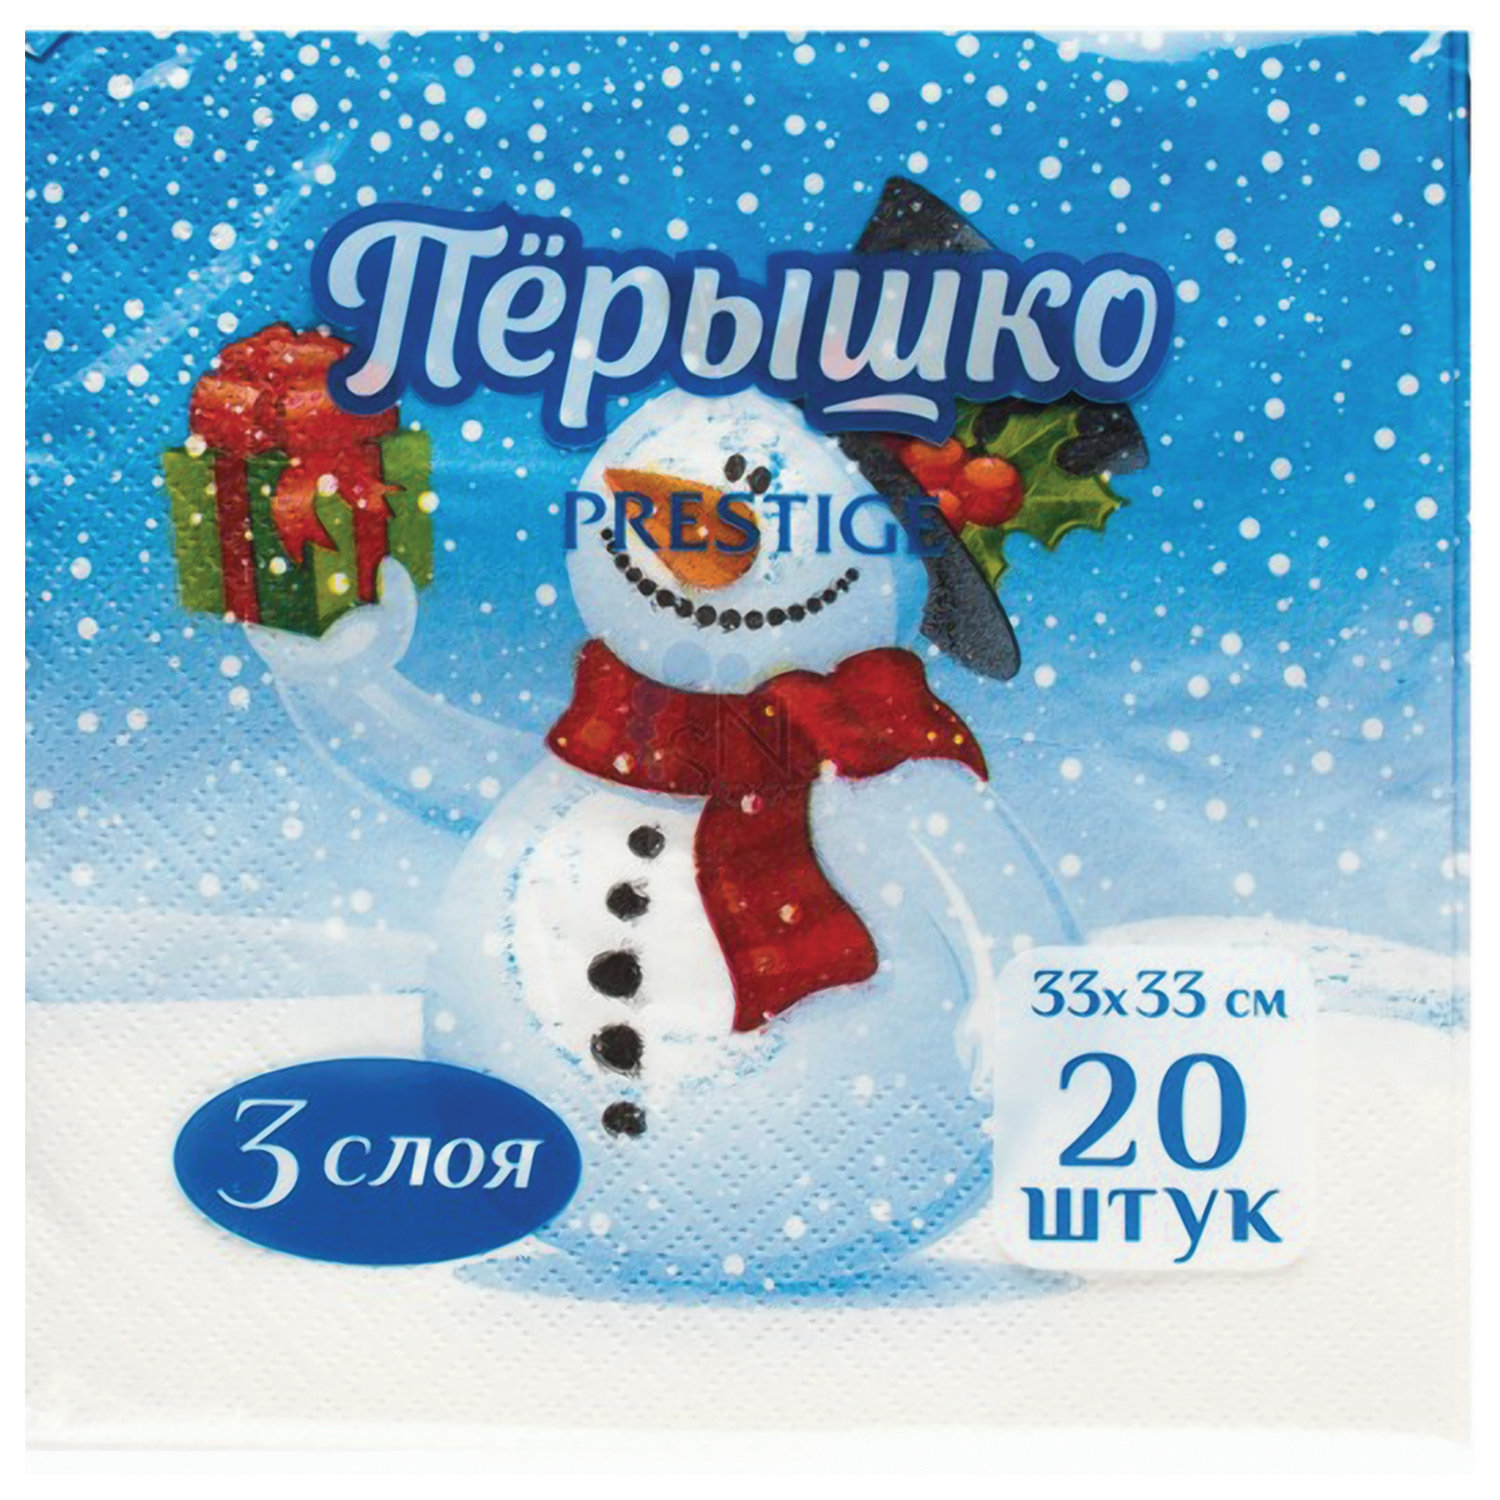 фото Салфетки бумажные перышко prestige снеговик с подарками сервировочные 20 шт